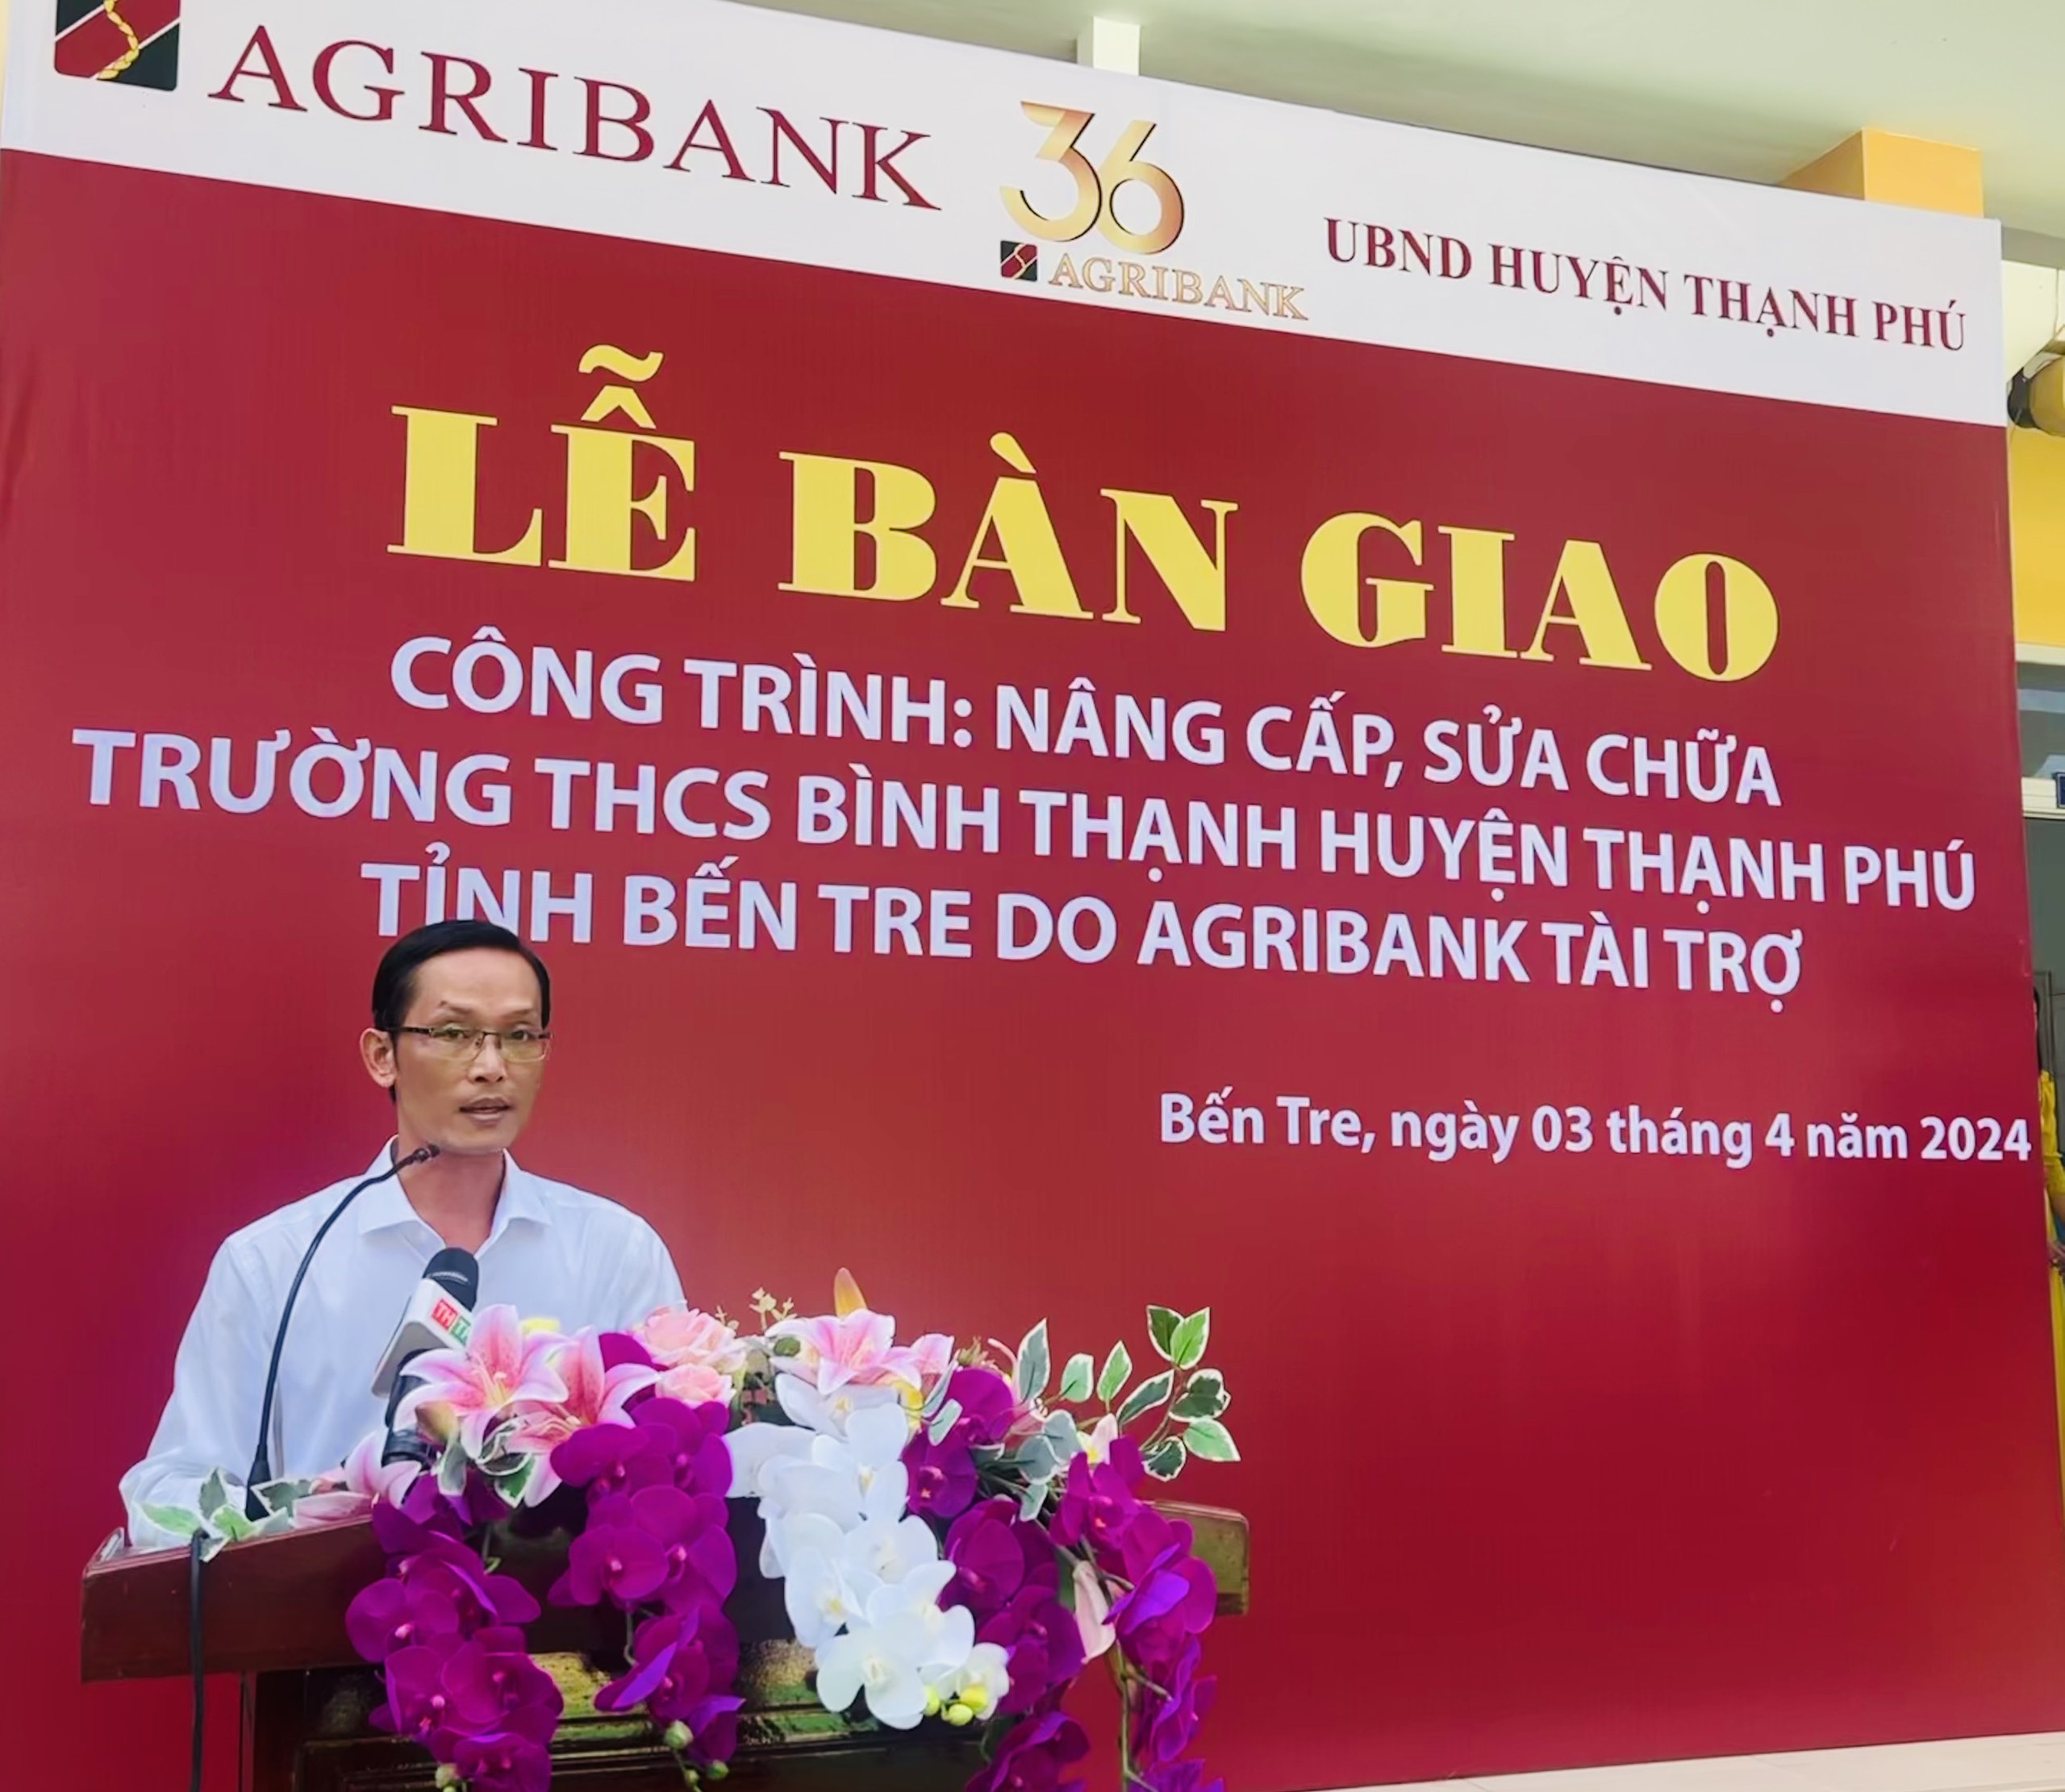 Agribank Chi nhánh tỉnh Bến Tre tài trợ nâng cấp, sửa chữa trường học tại huyện Thạnh Phú- Ảnh 3.